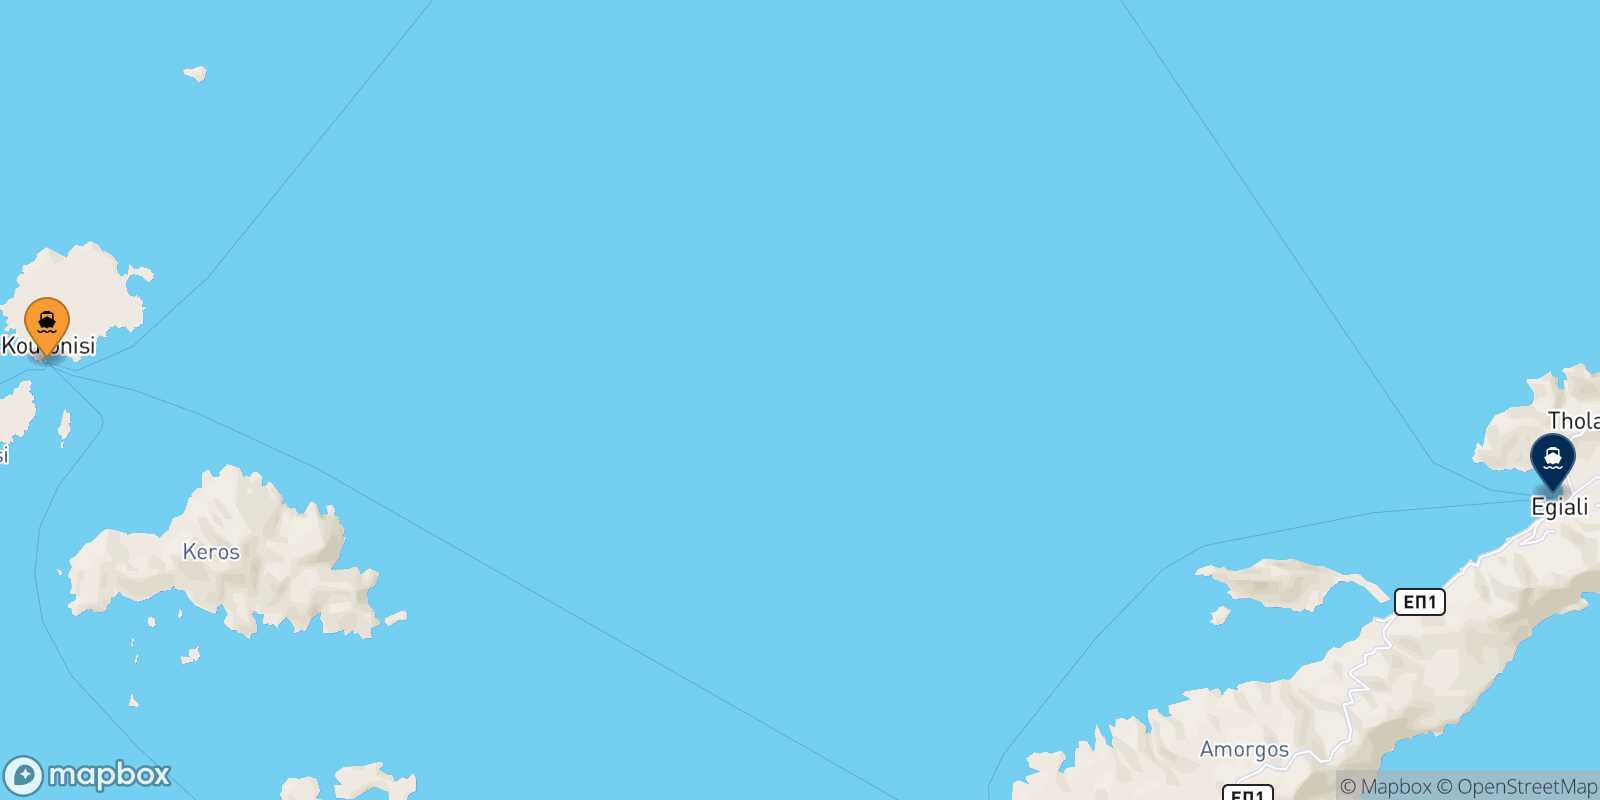 Koufonissi Aegiali (Amorgos) route map